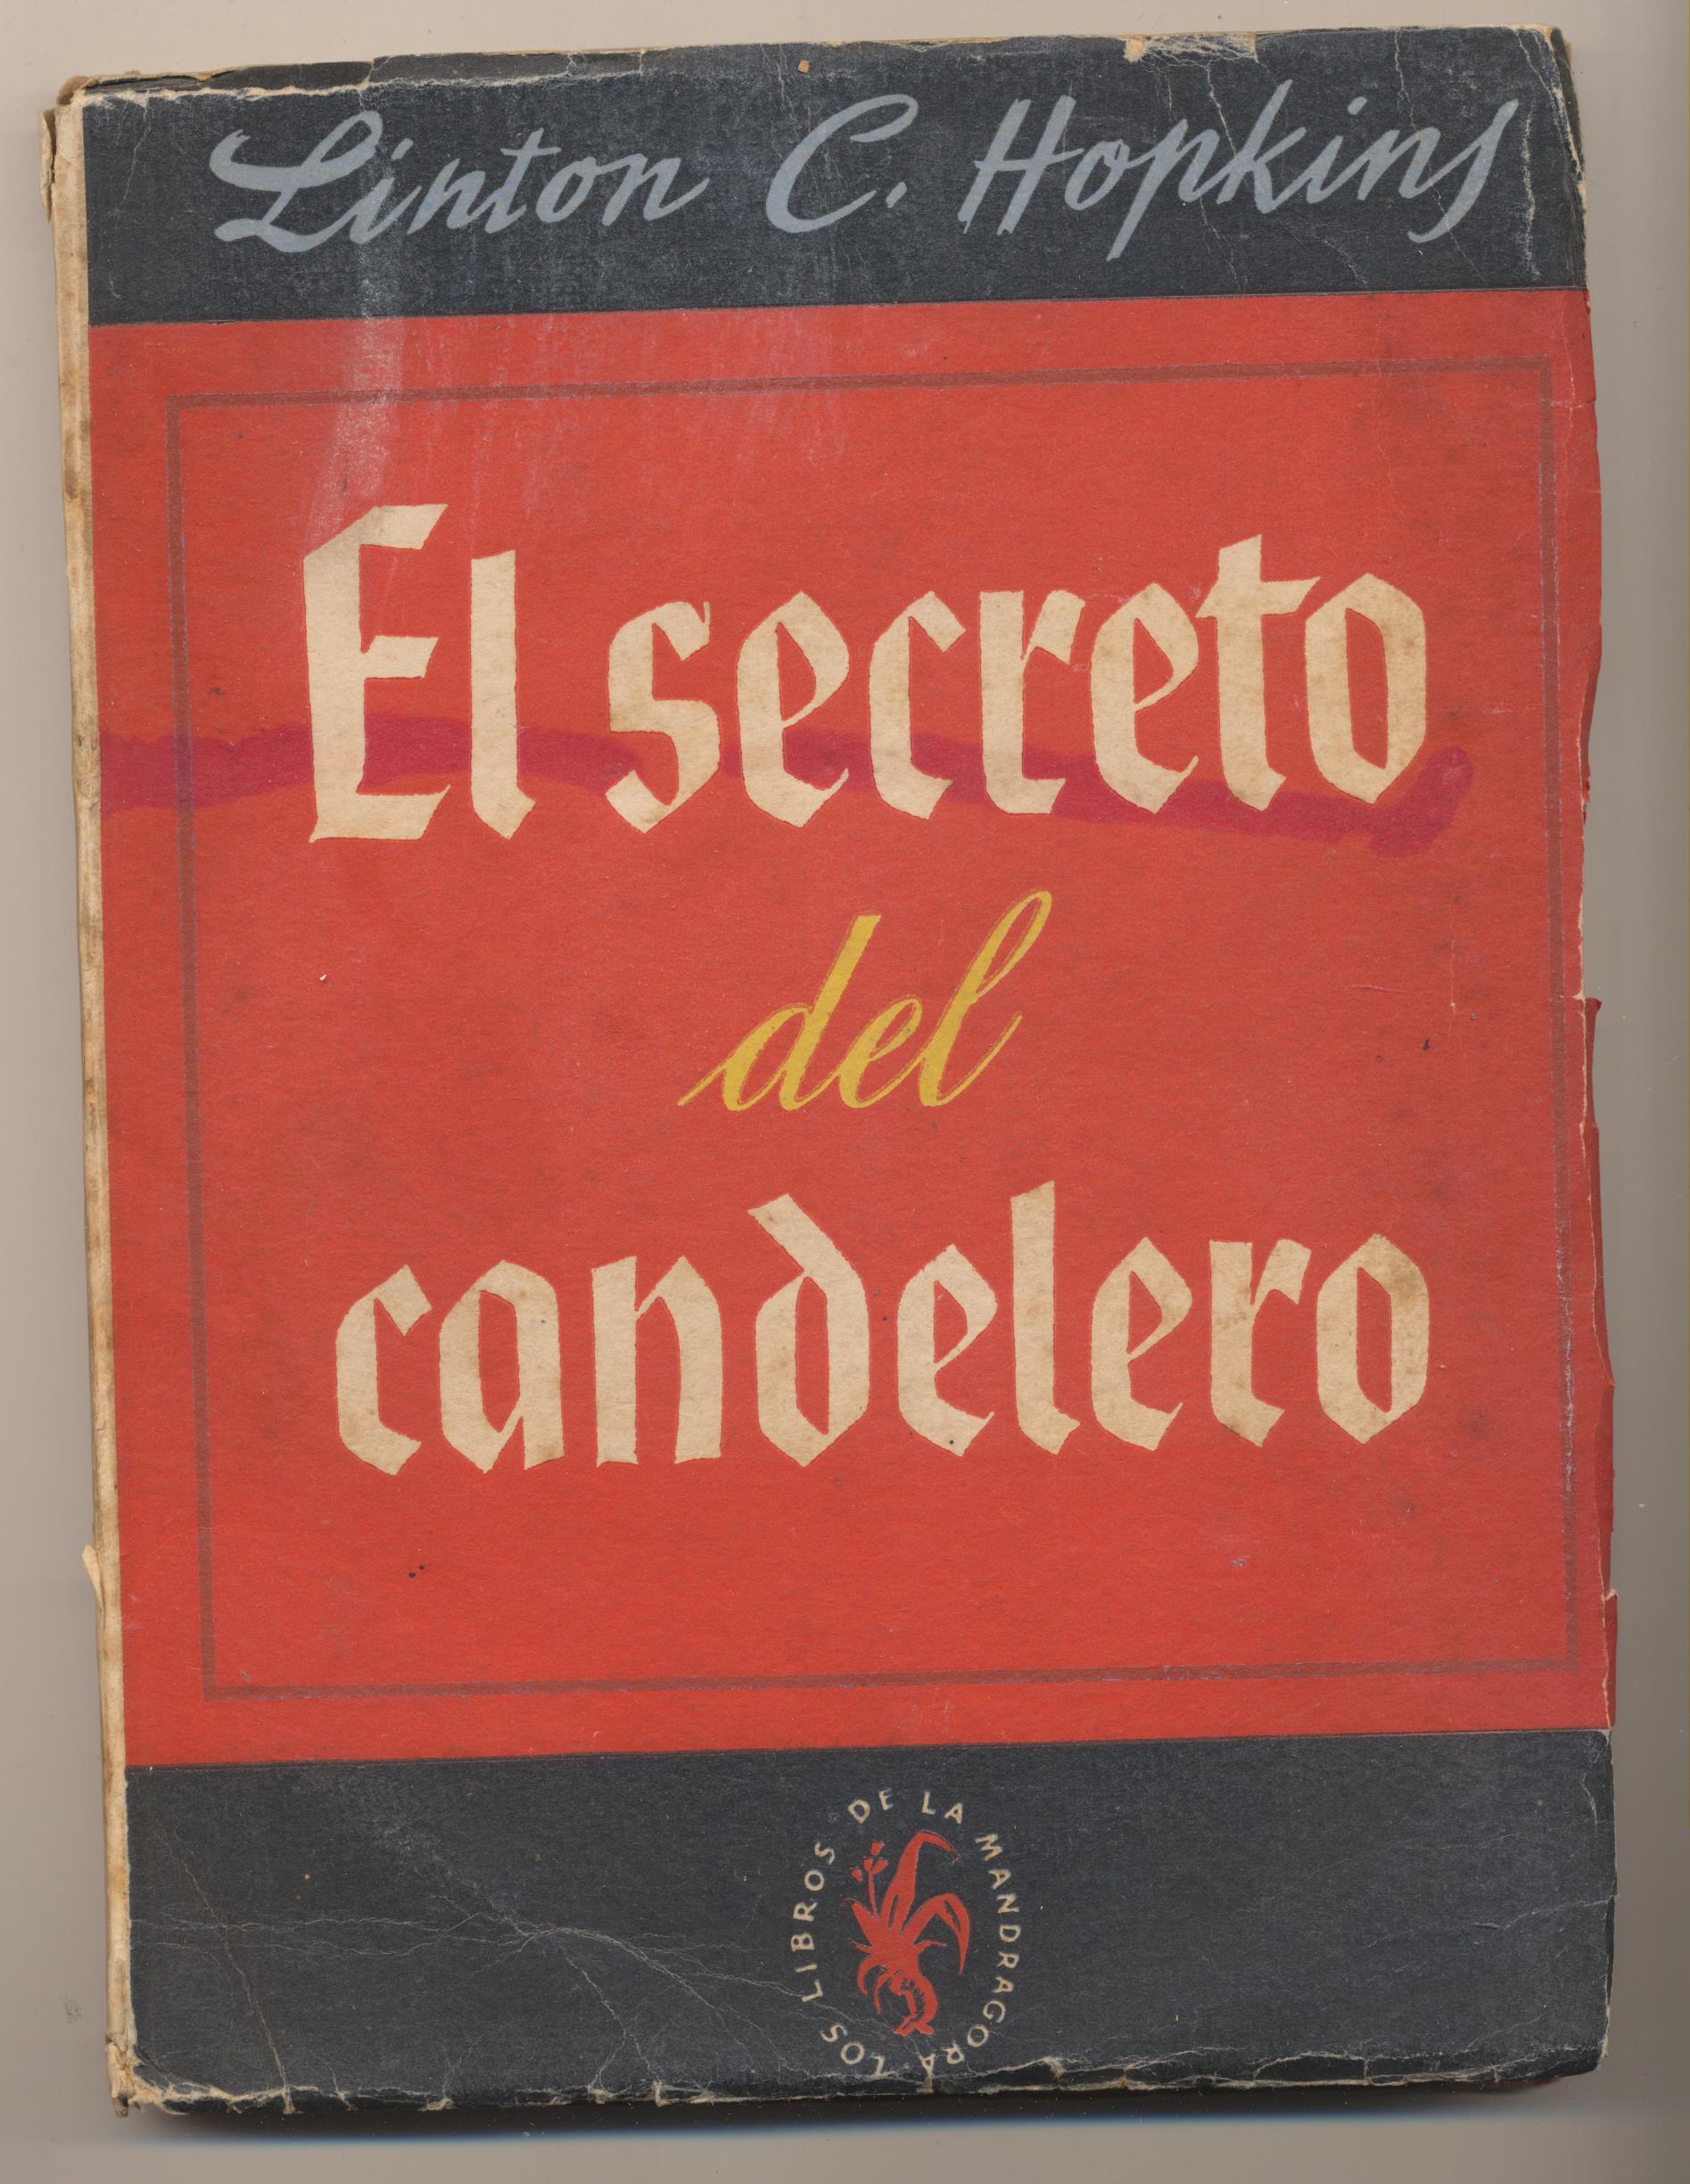 Linton C. Hopkins. El Secreto del Candelero. 1ª Edición Lauro 1946